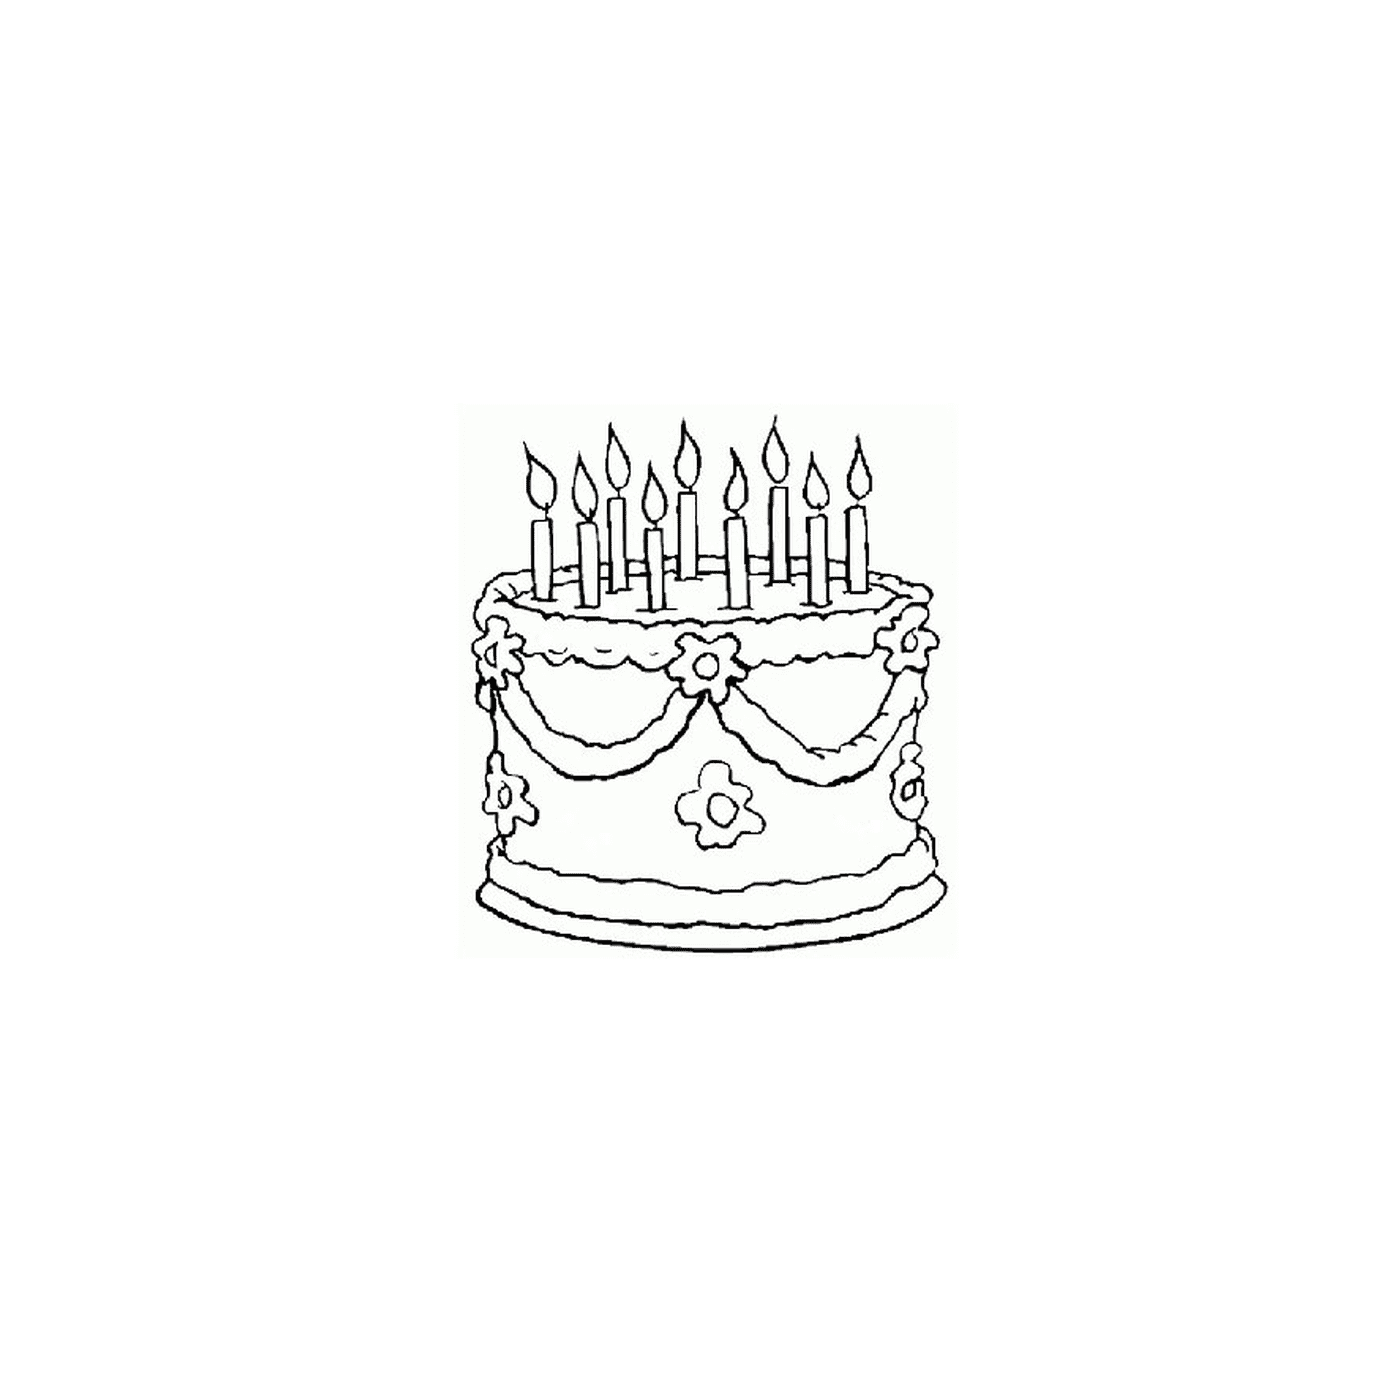  un pastel de cumpleaños con velas encendidas 